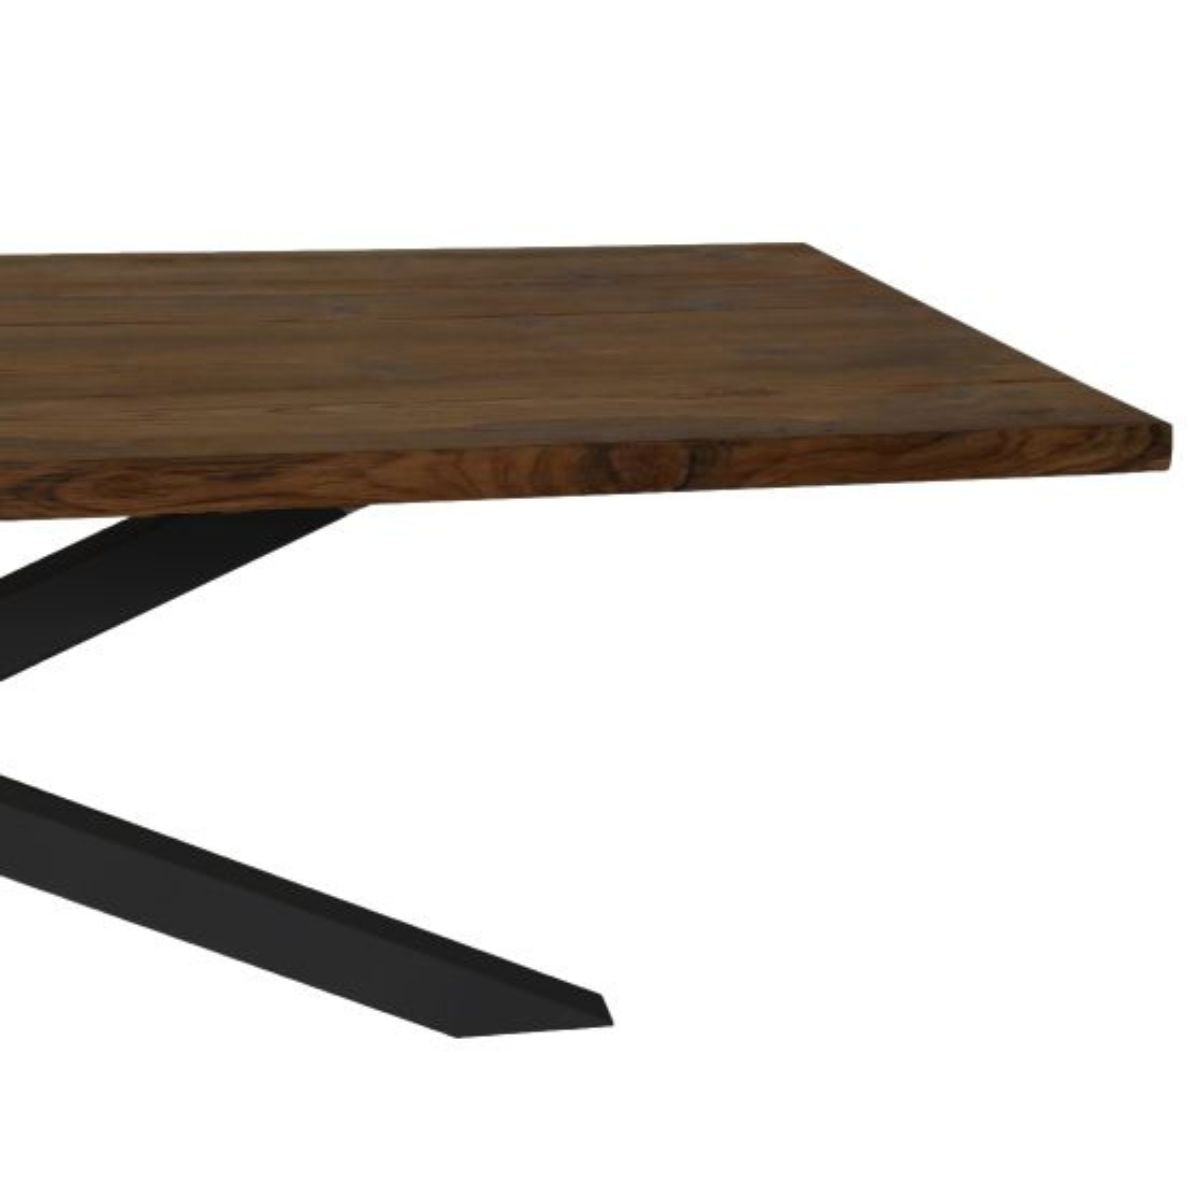 Ervaar de charme van een rechthoekige tafel gemaakt van hoogwaardig teakhout en een robuust metalen onderstel, ontworpen voor langdurig gebruik.